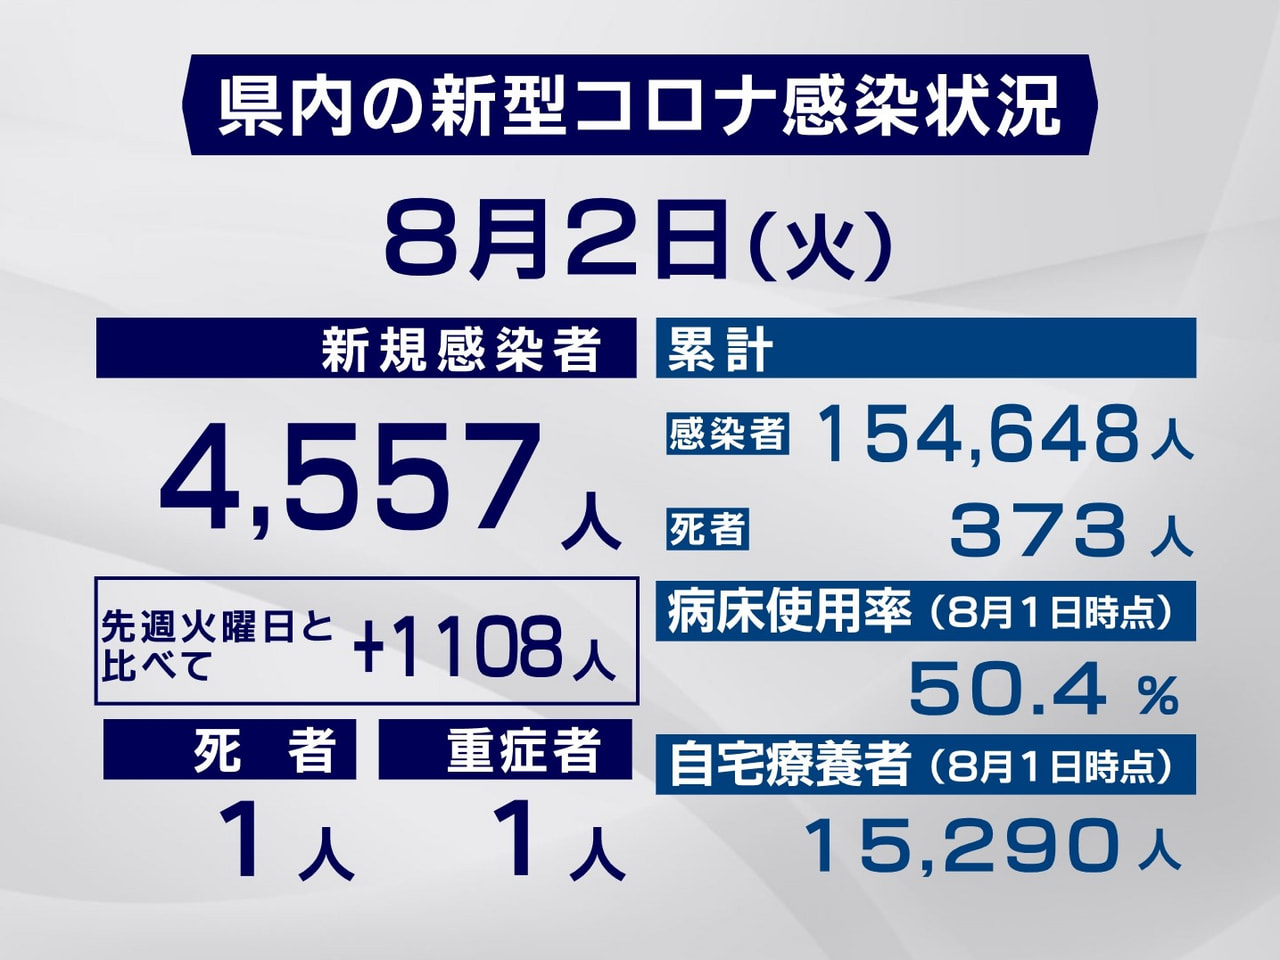 岐阜県は２日、新型コロナウイルスの新規感染者が過去最多の４５５７人、また１人の死...